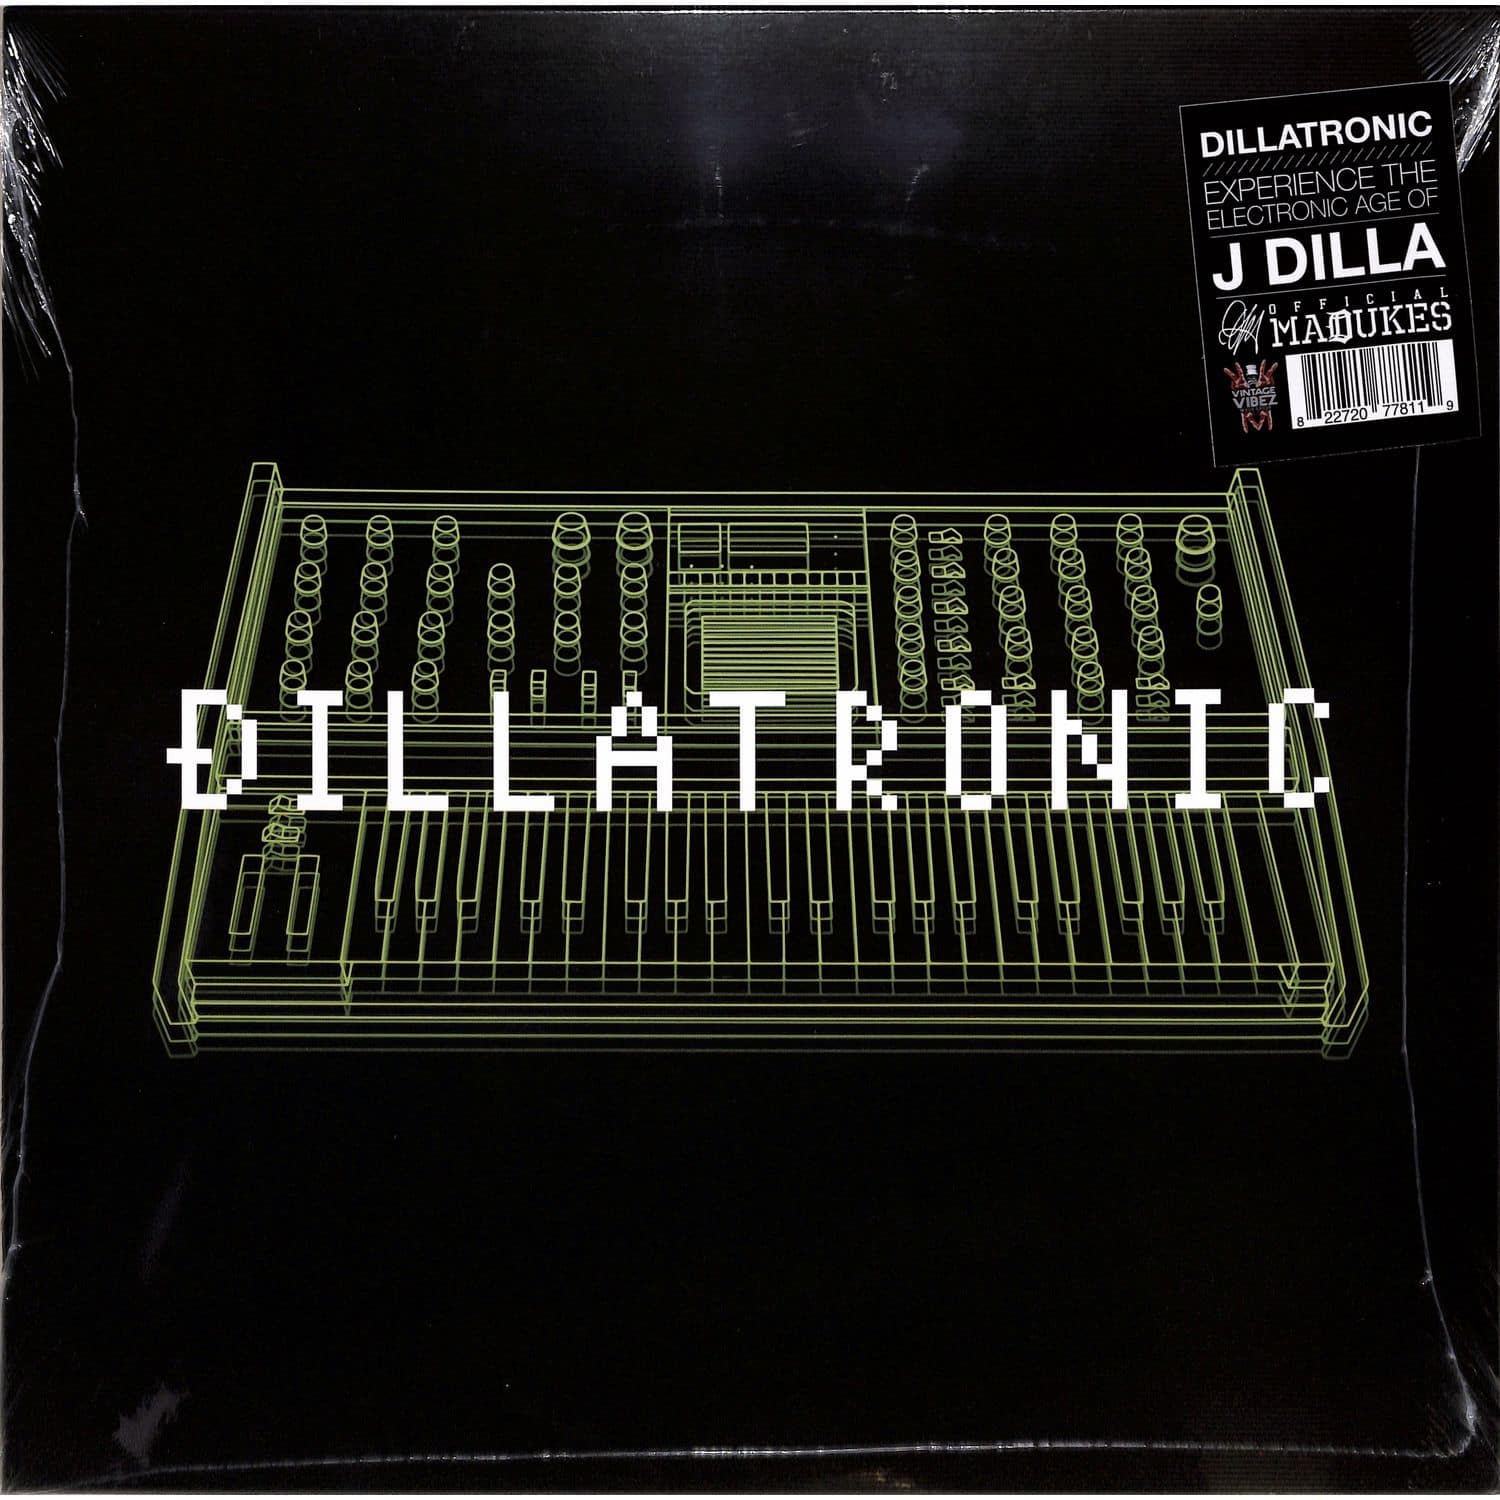 J Dilla - DILLATRONIC 